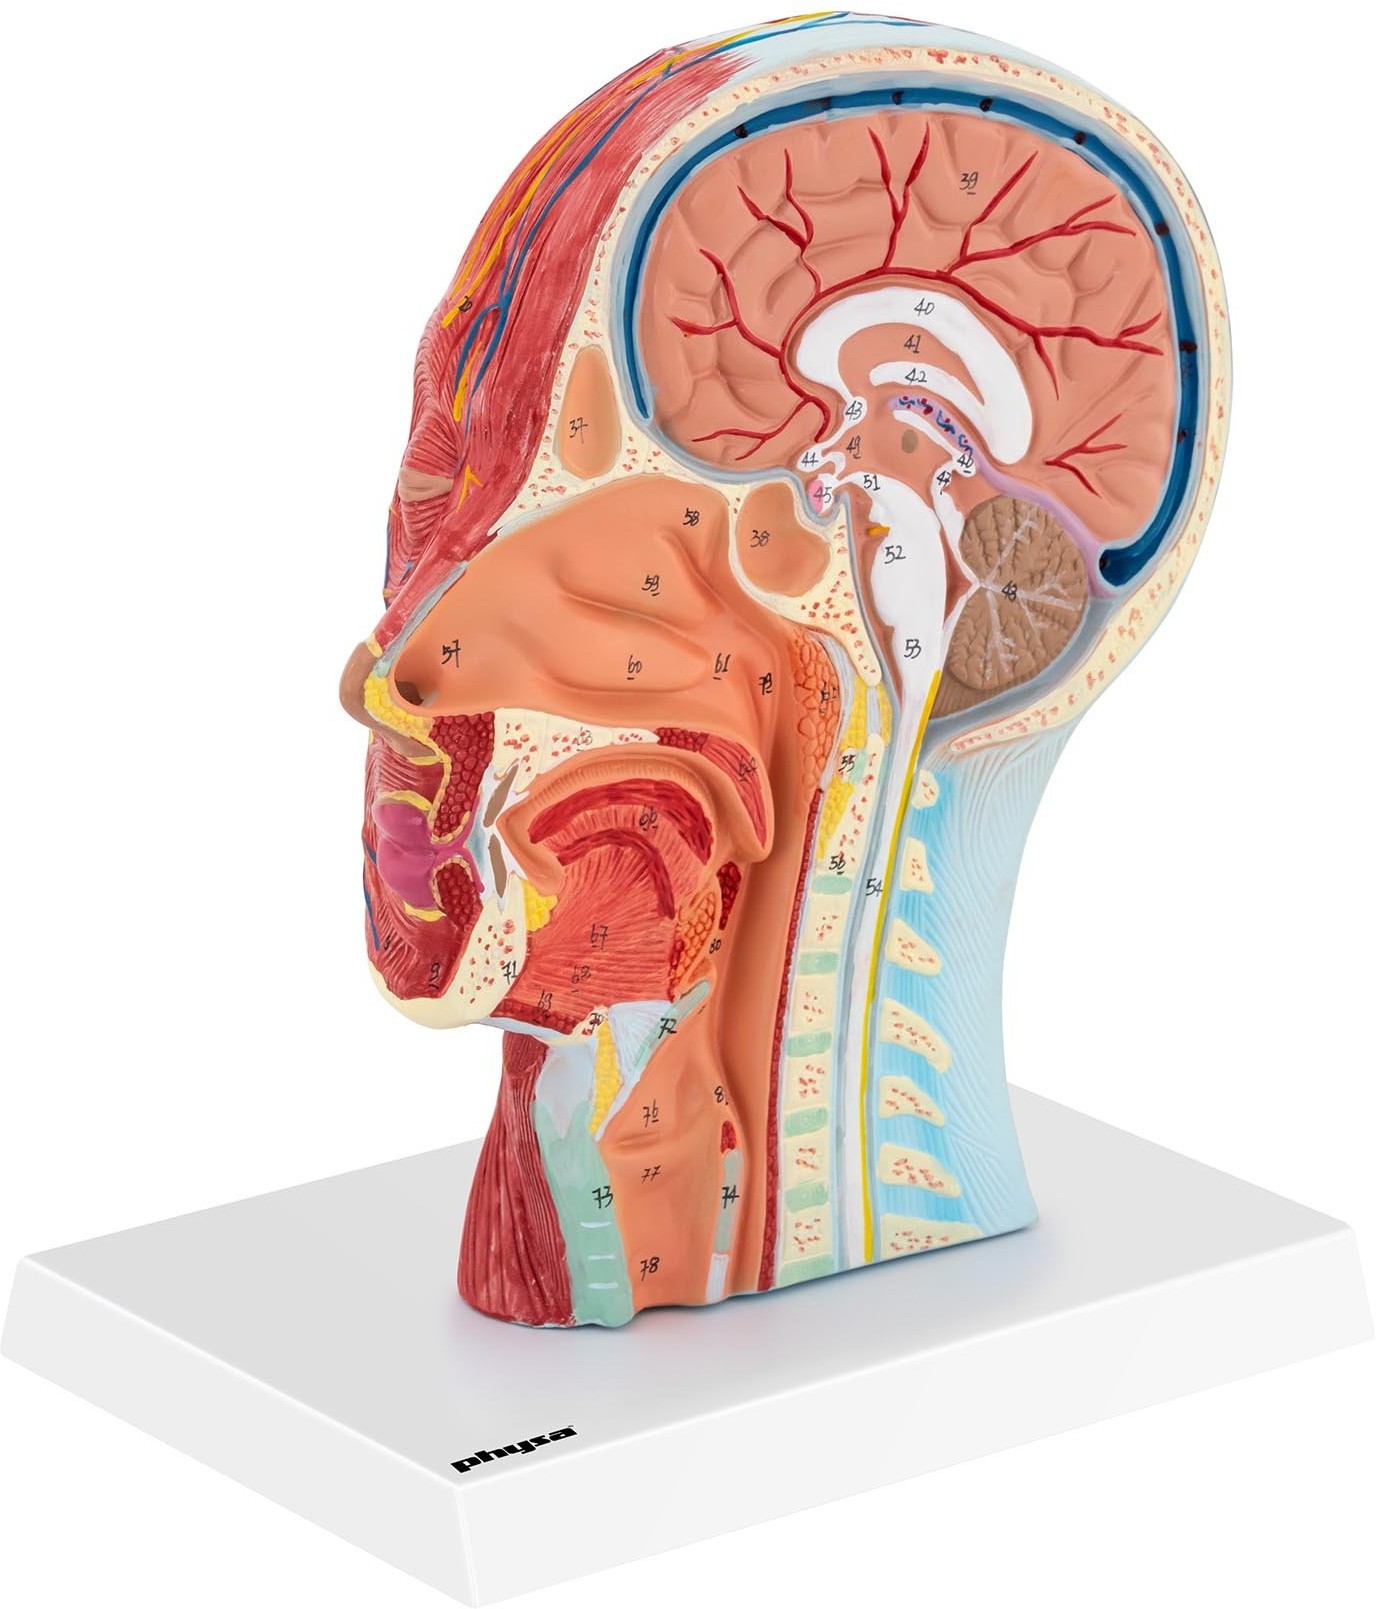 physa physa Głowa i mózg - model anatomiczny PHY-HM-5 - 3 LATA GWARANCJI/DARMOWA WYSYŁKA PHY-HM-5